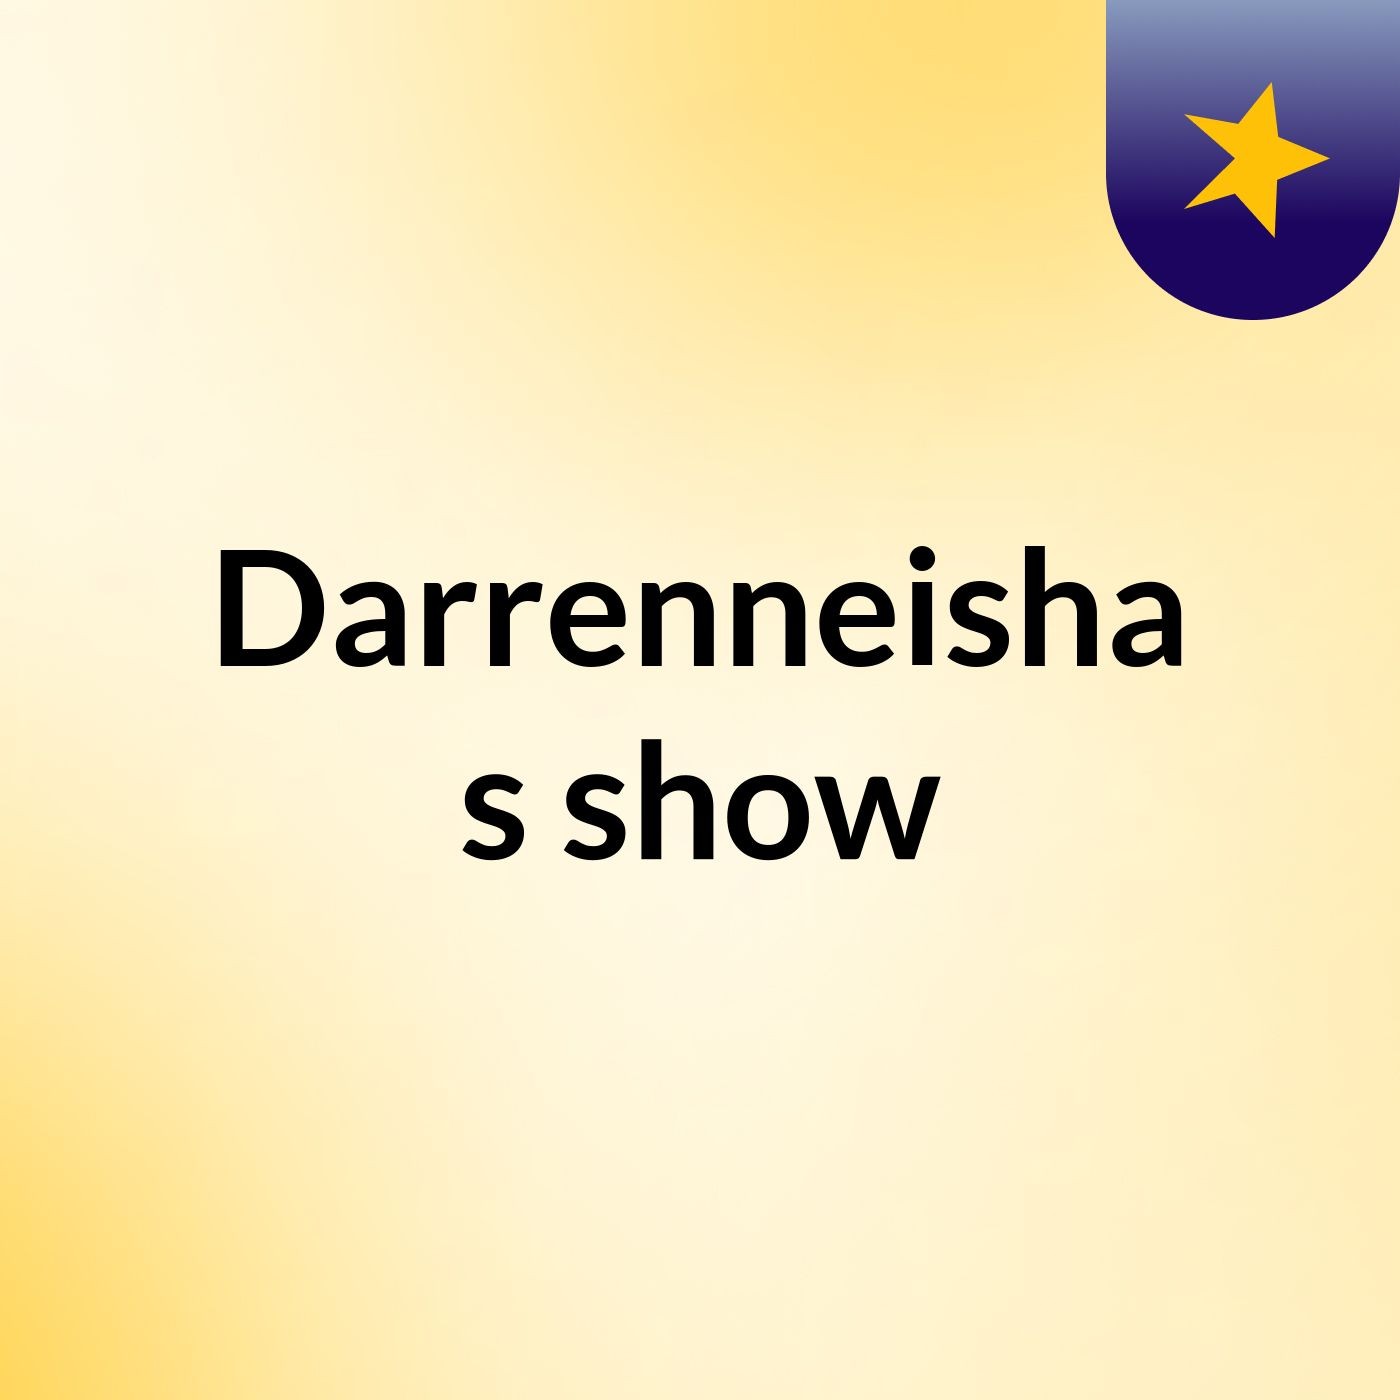 Episode 23 - Darrenneisha's show